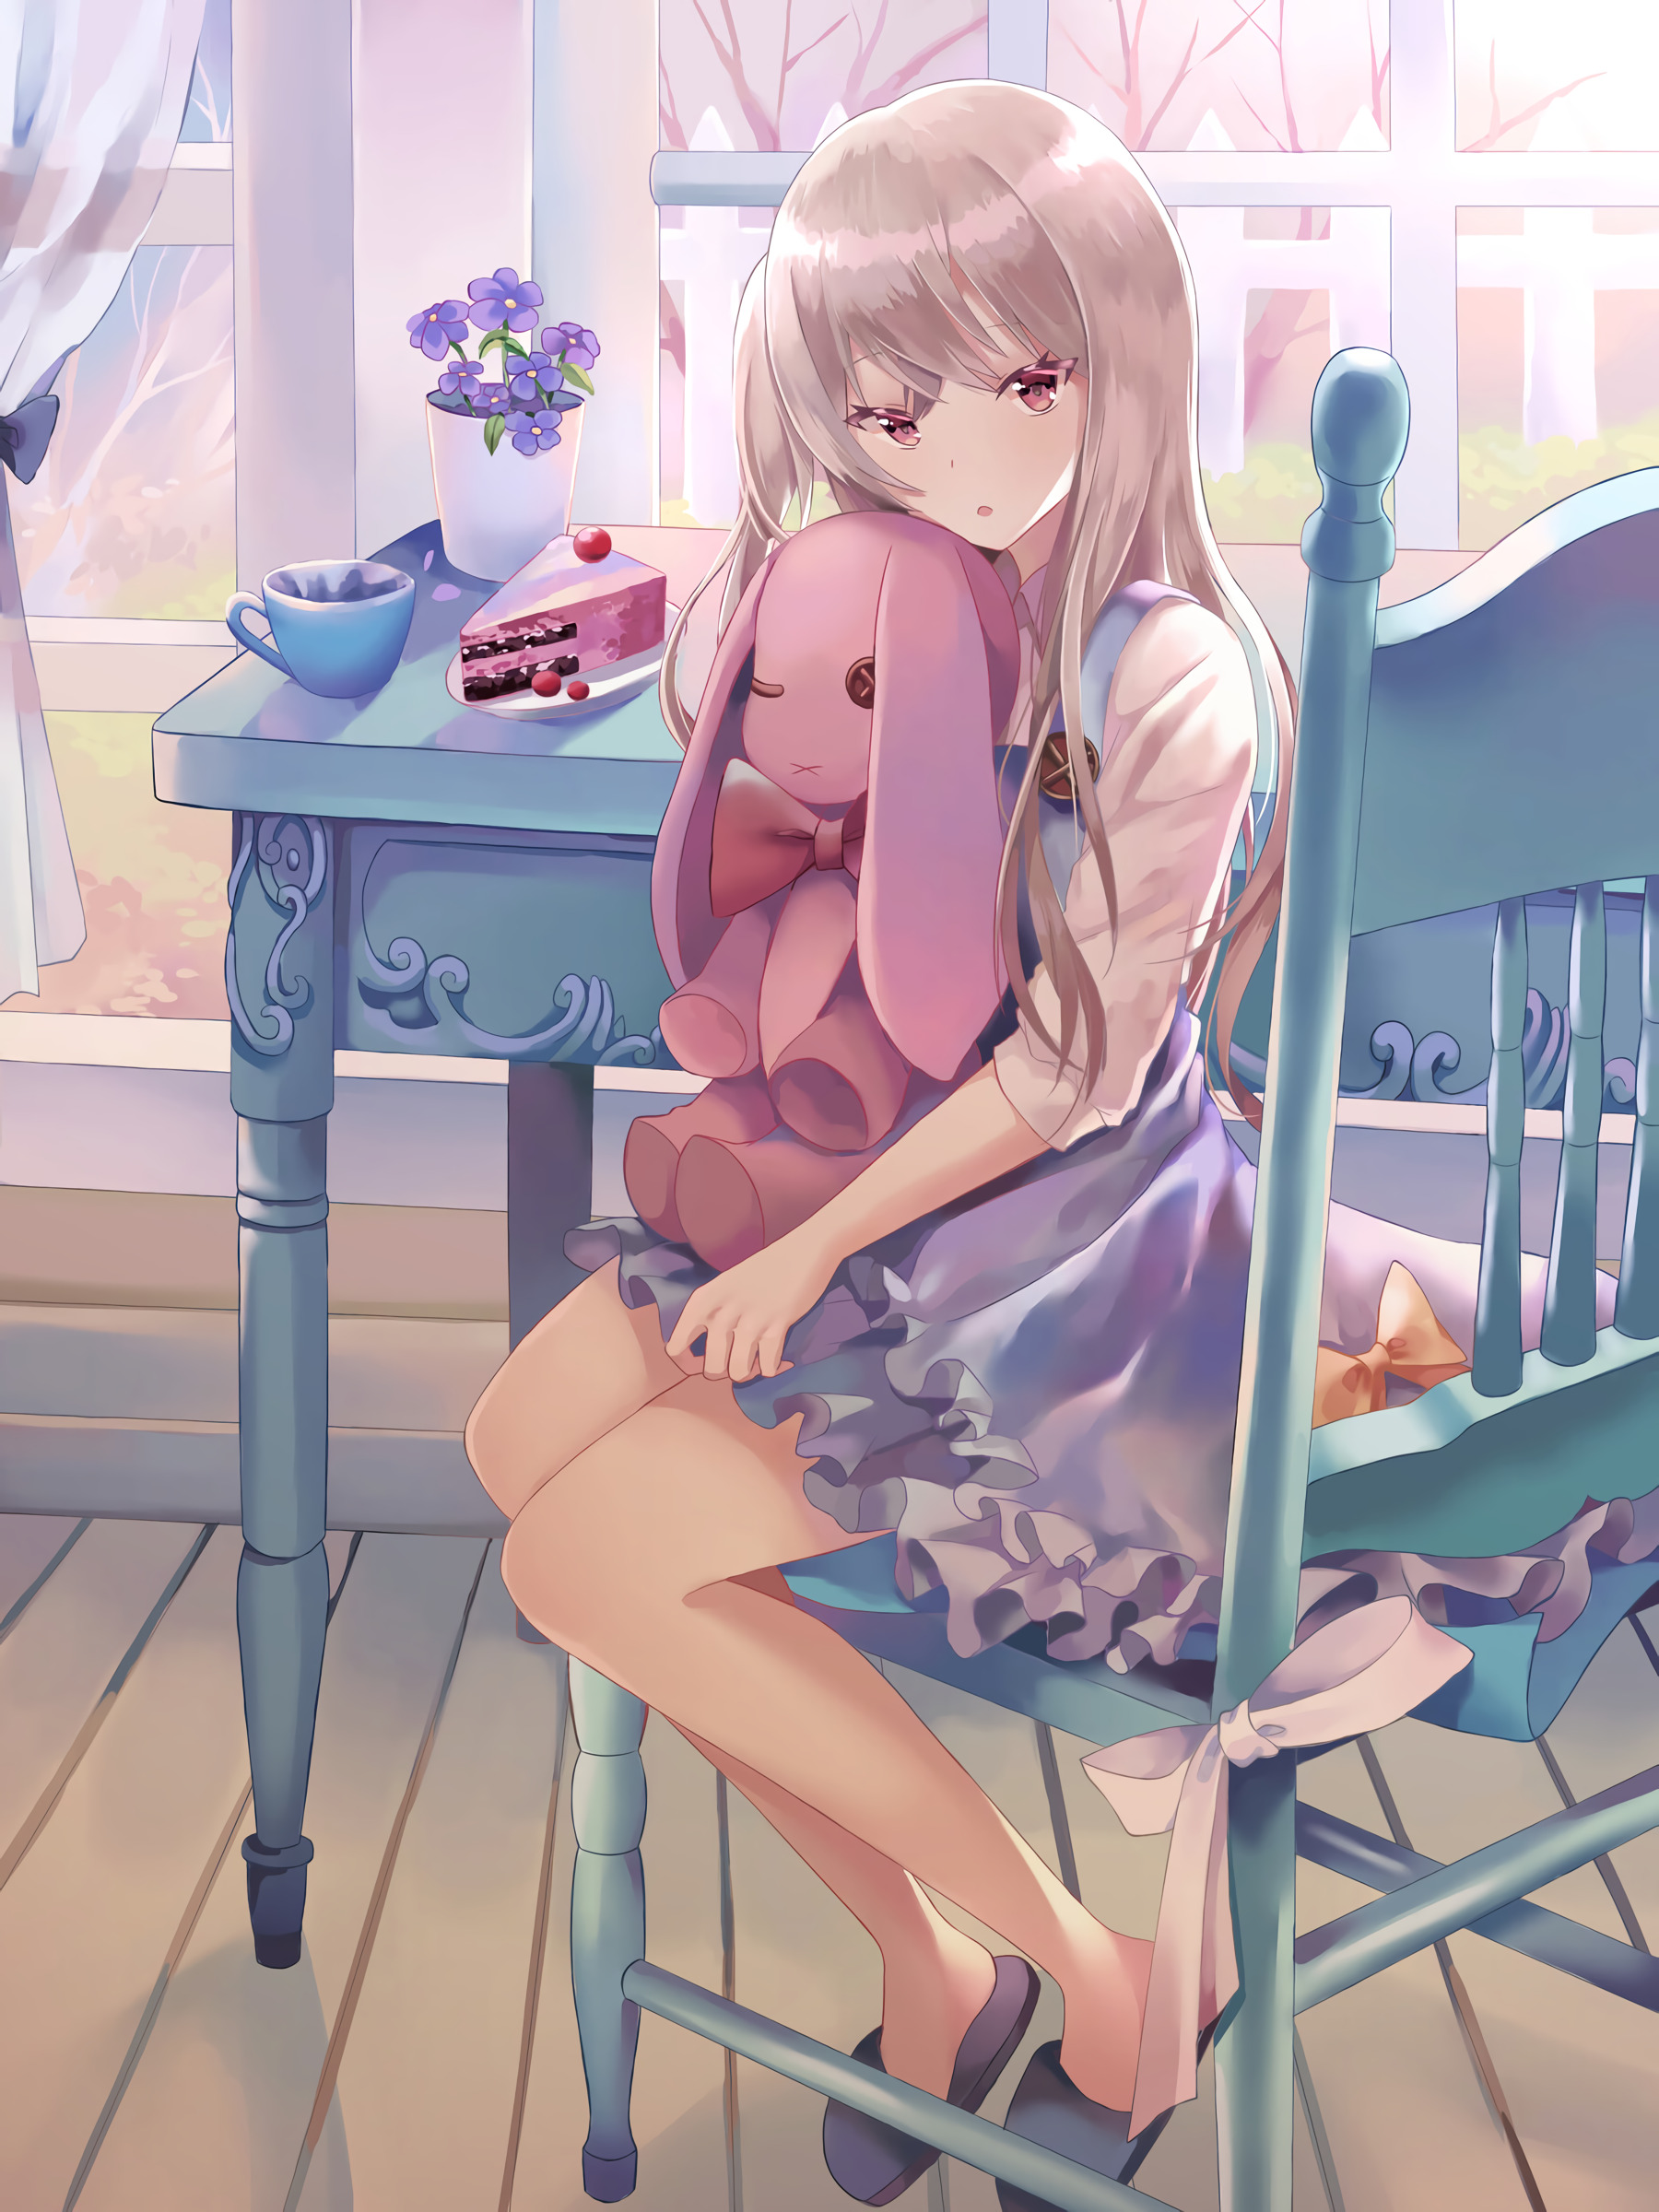 Digital Art Anime Illustration Fall Purple Flowers Stuffed Animal Cake Tea By The Window Sitting Loo 1800x2400